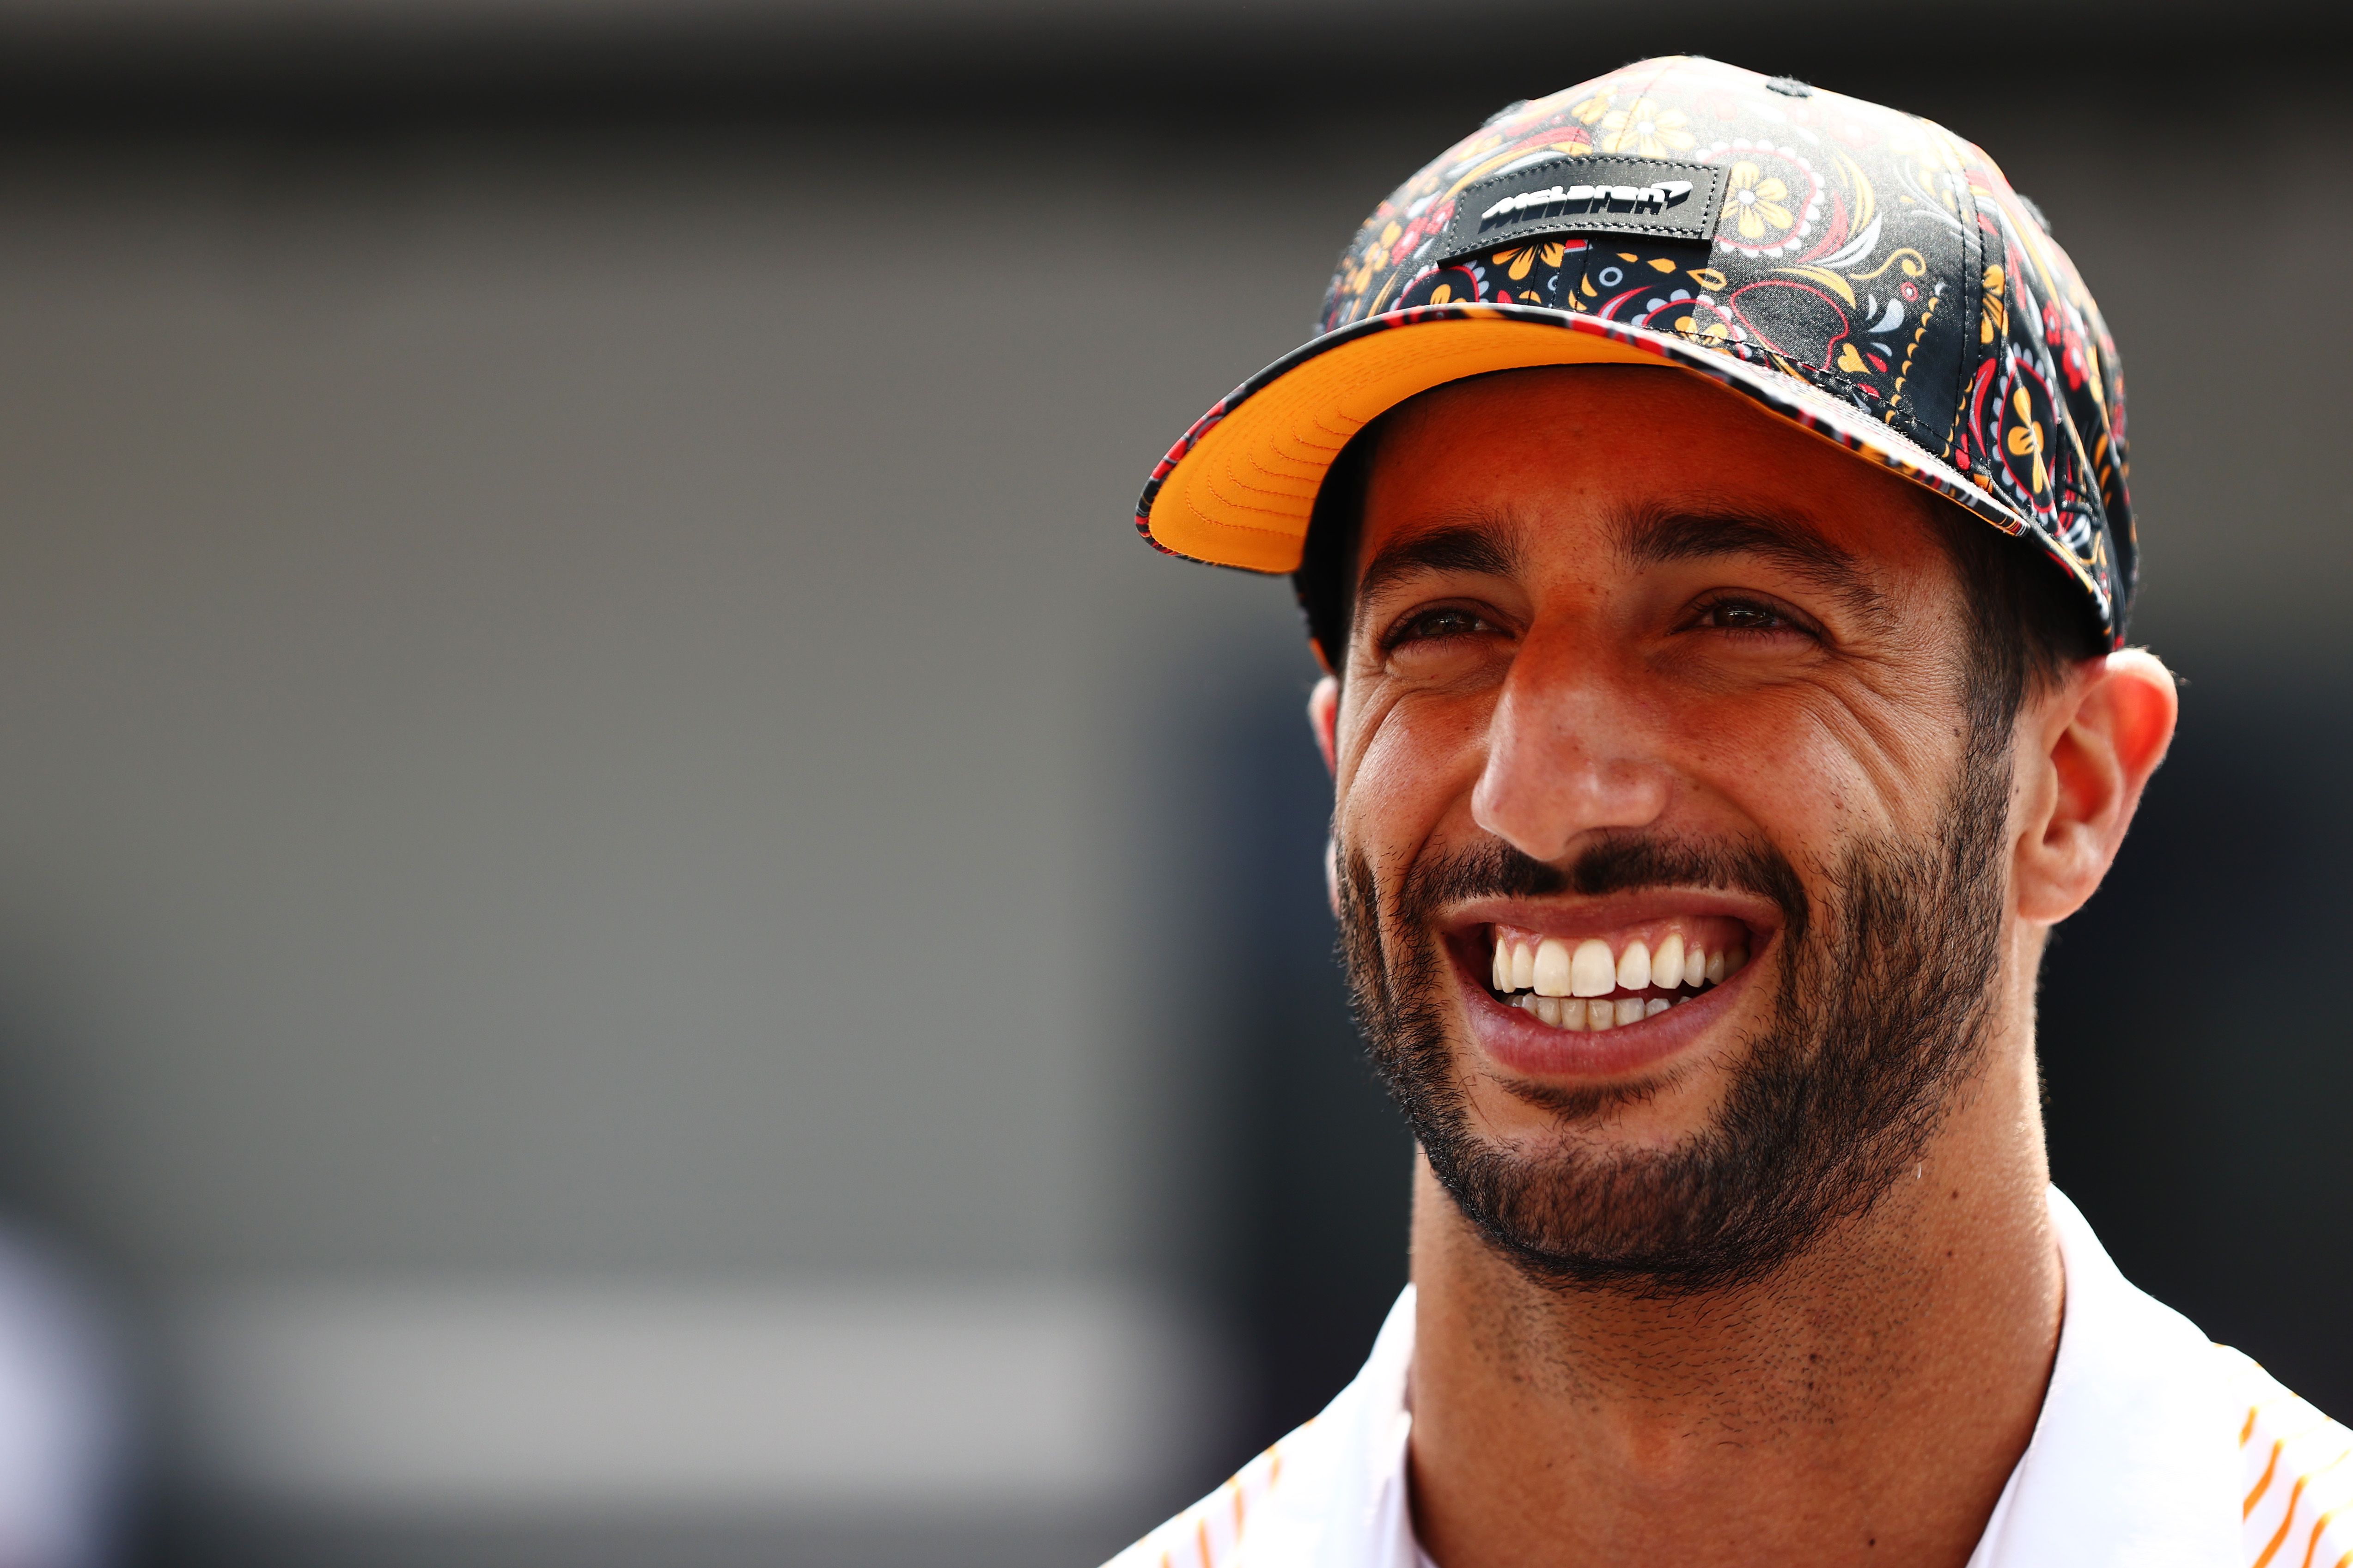 Daniel Ricciardo Has Some Catching Up to Do